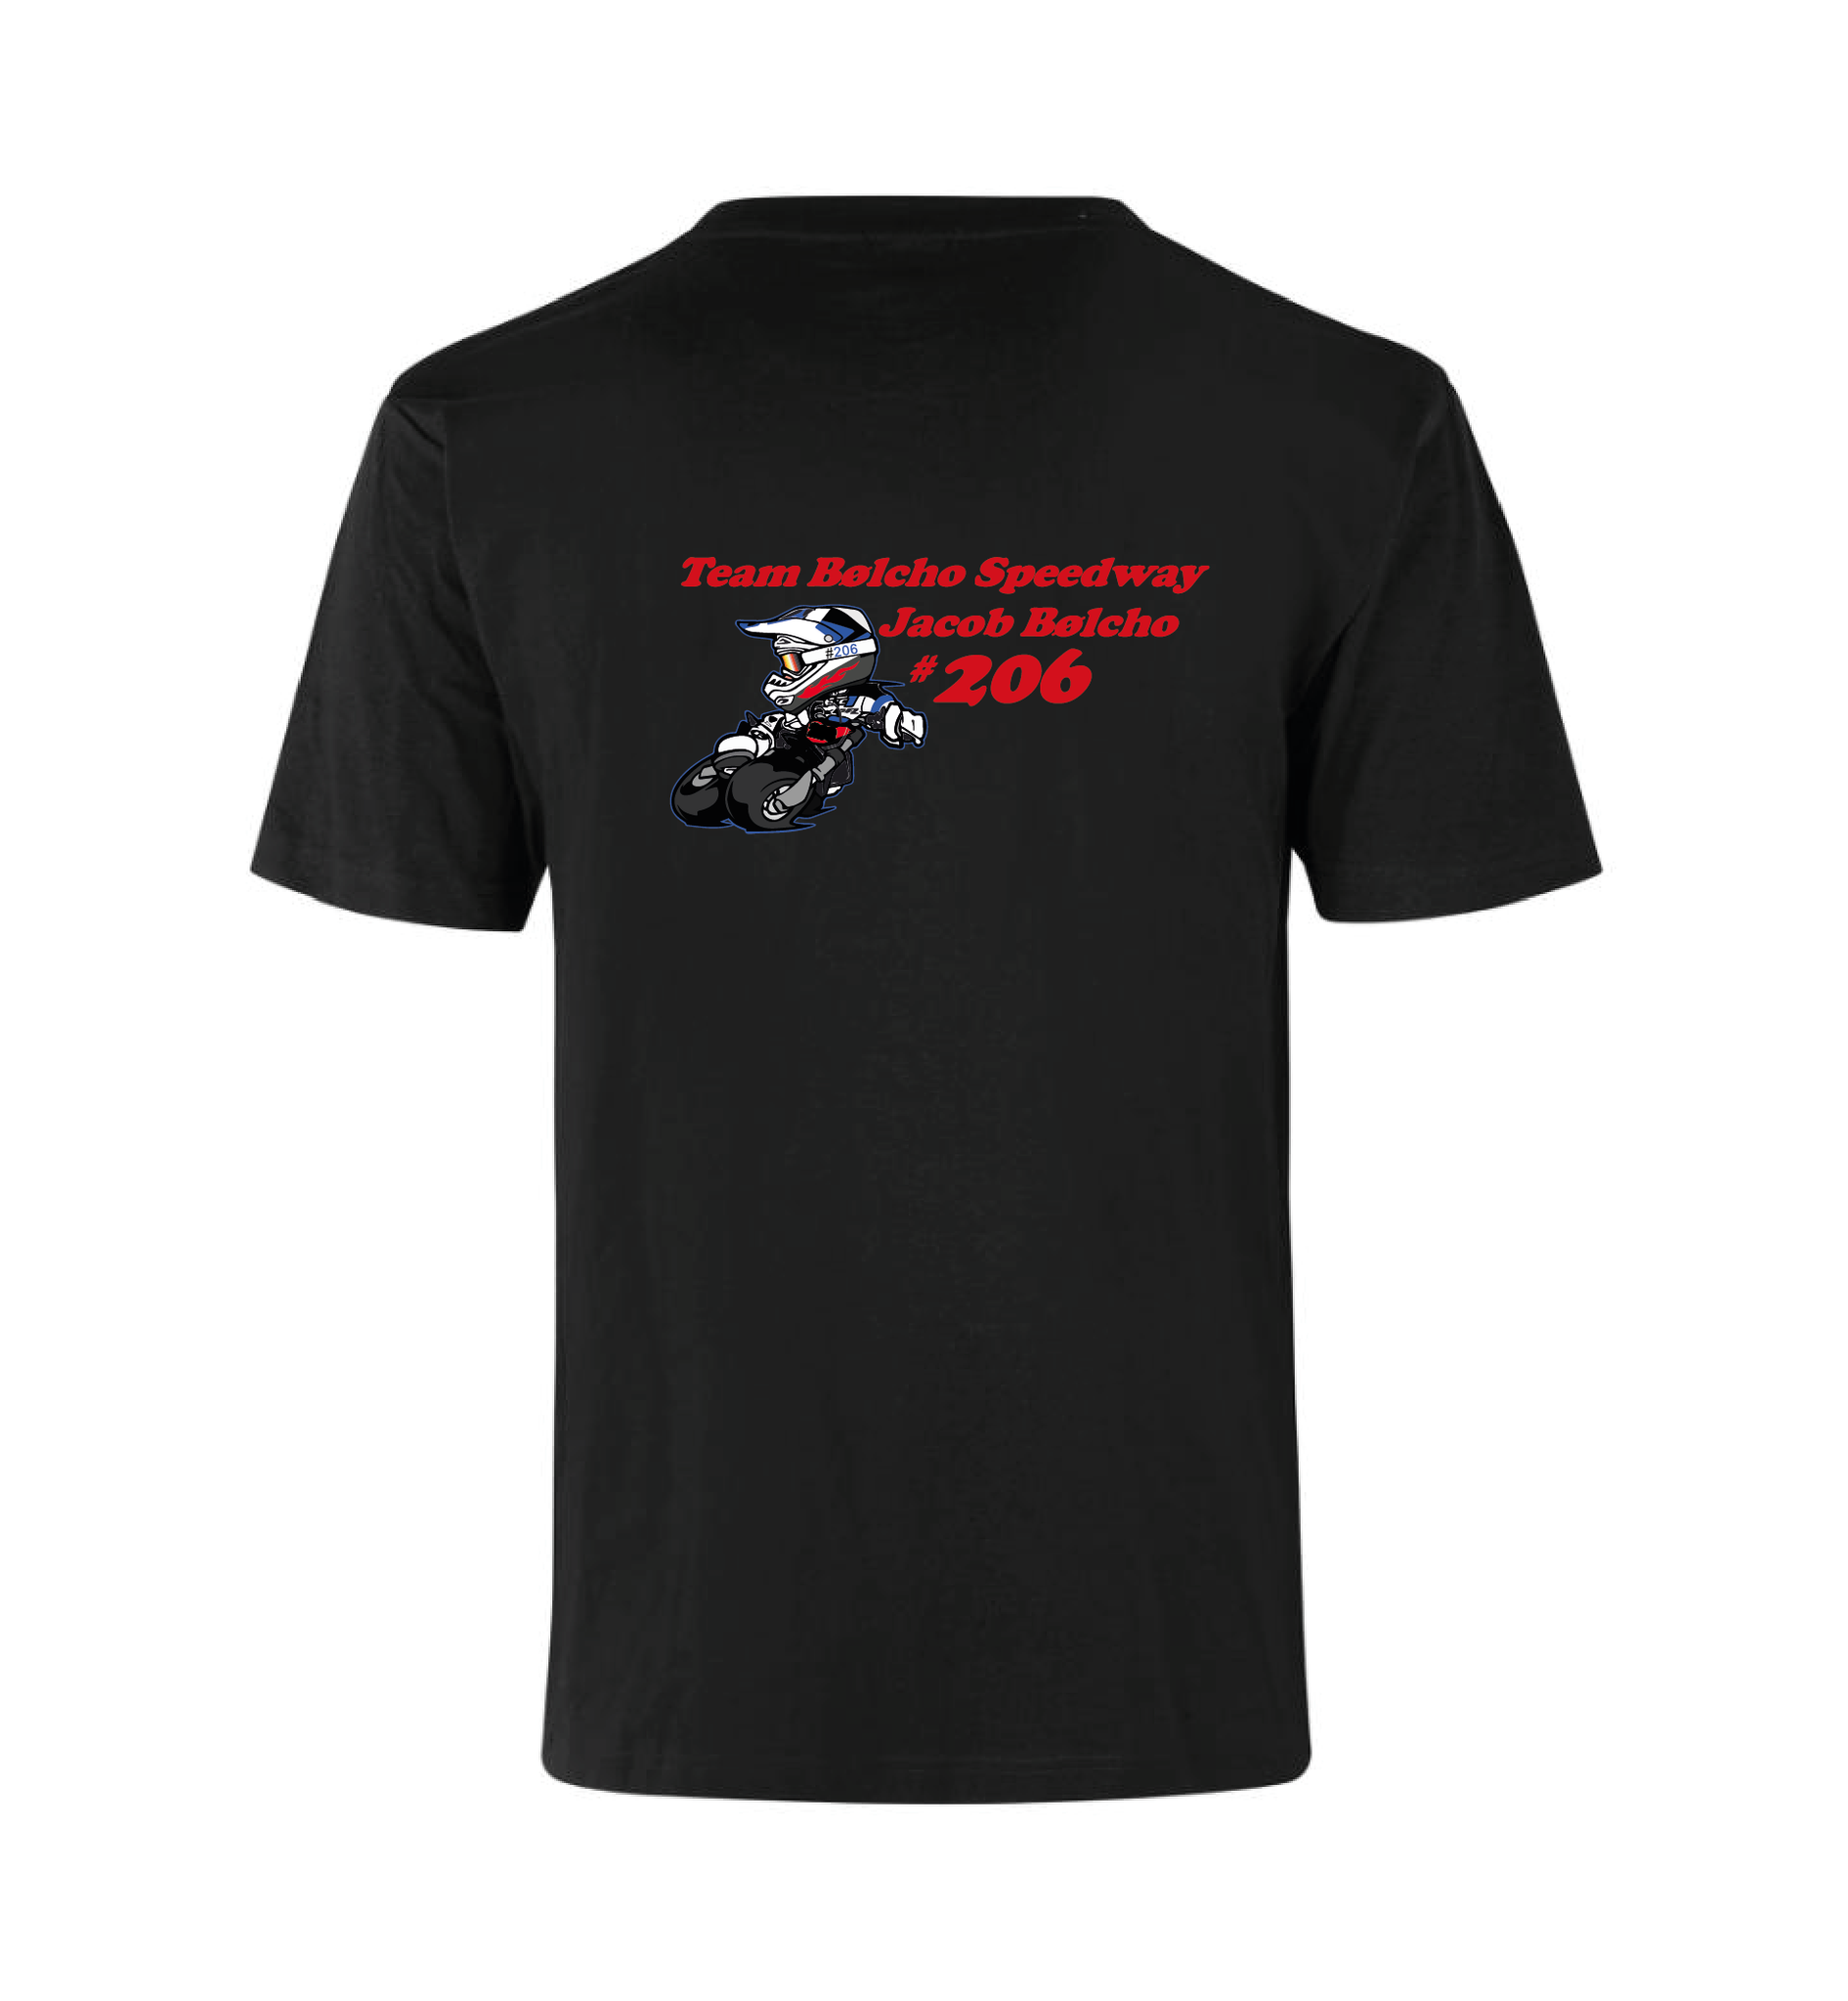 Team Bølcho Speedway T-Shirt